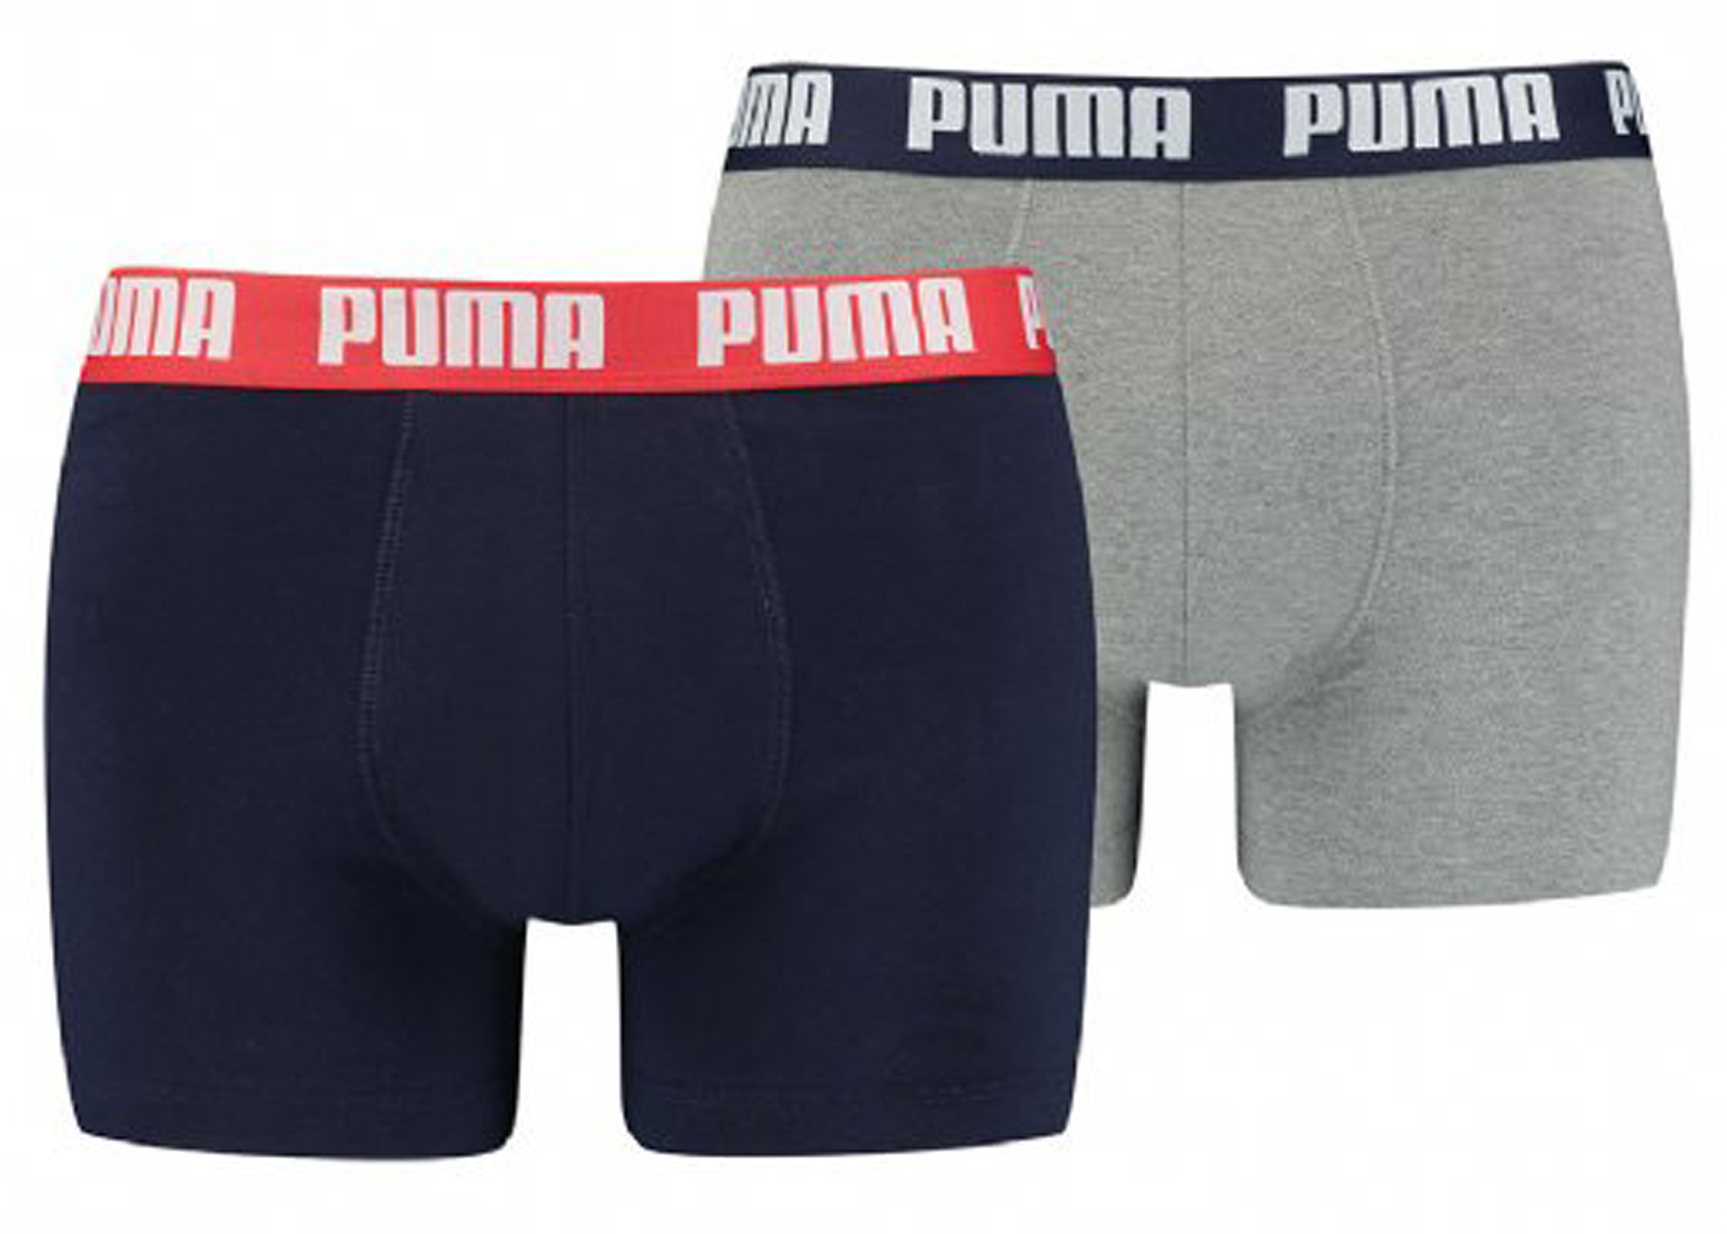 Pack 2 boxers Puma Negro/Negro - Peregrinoteca